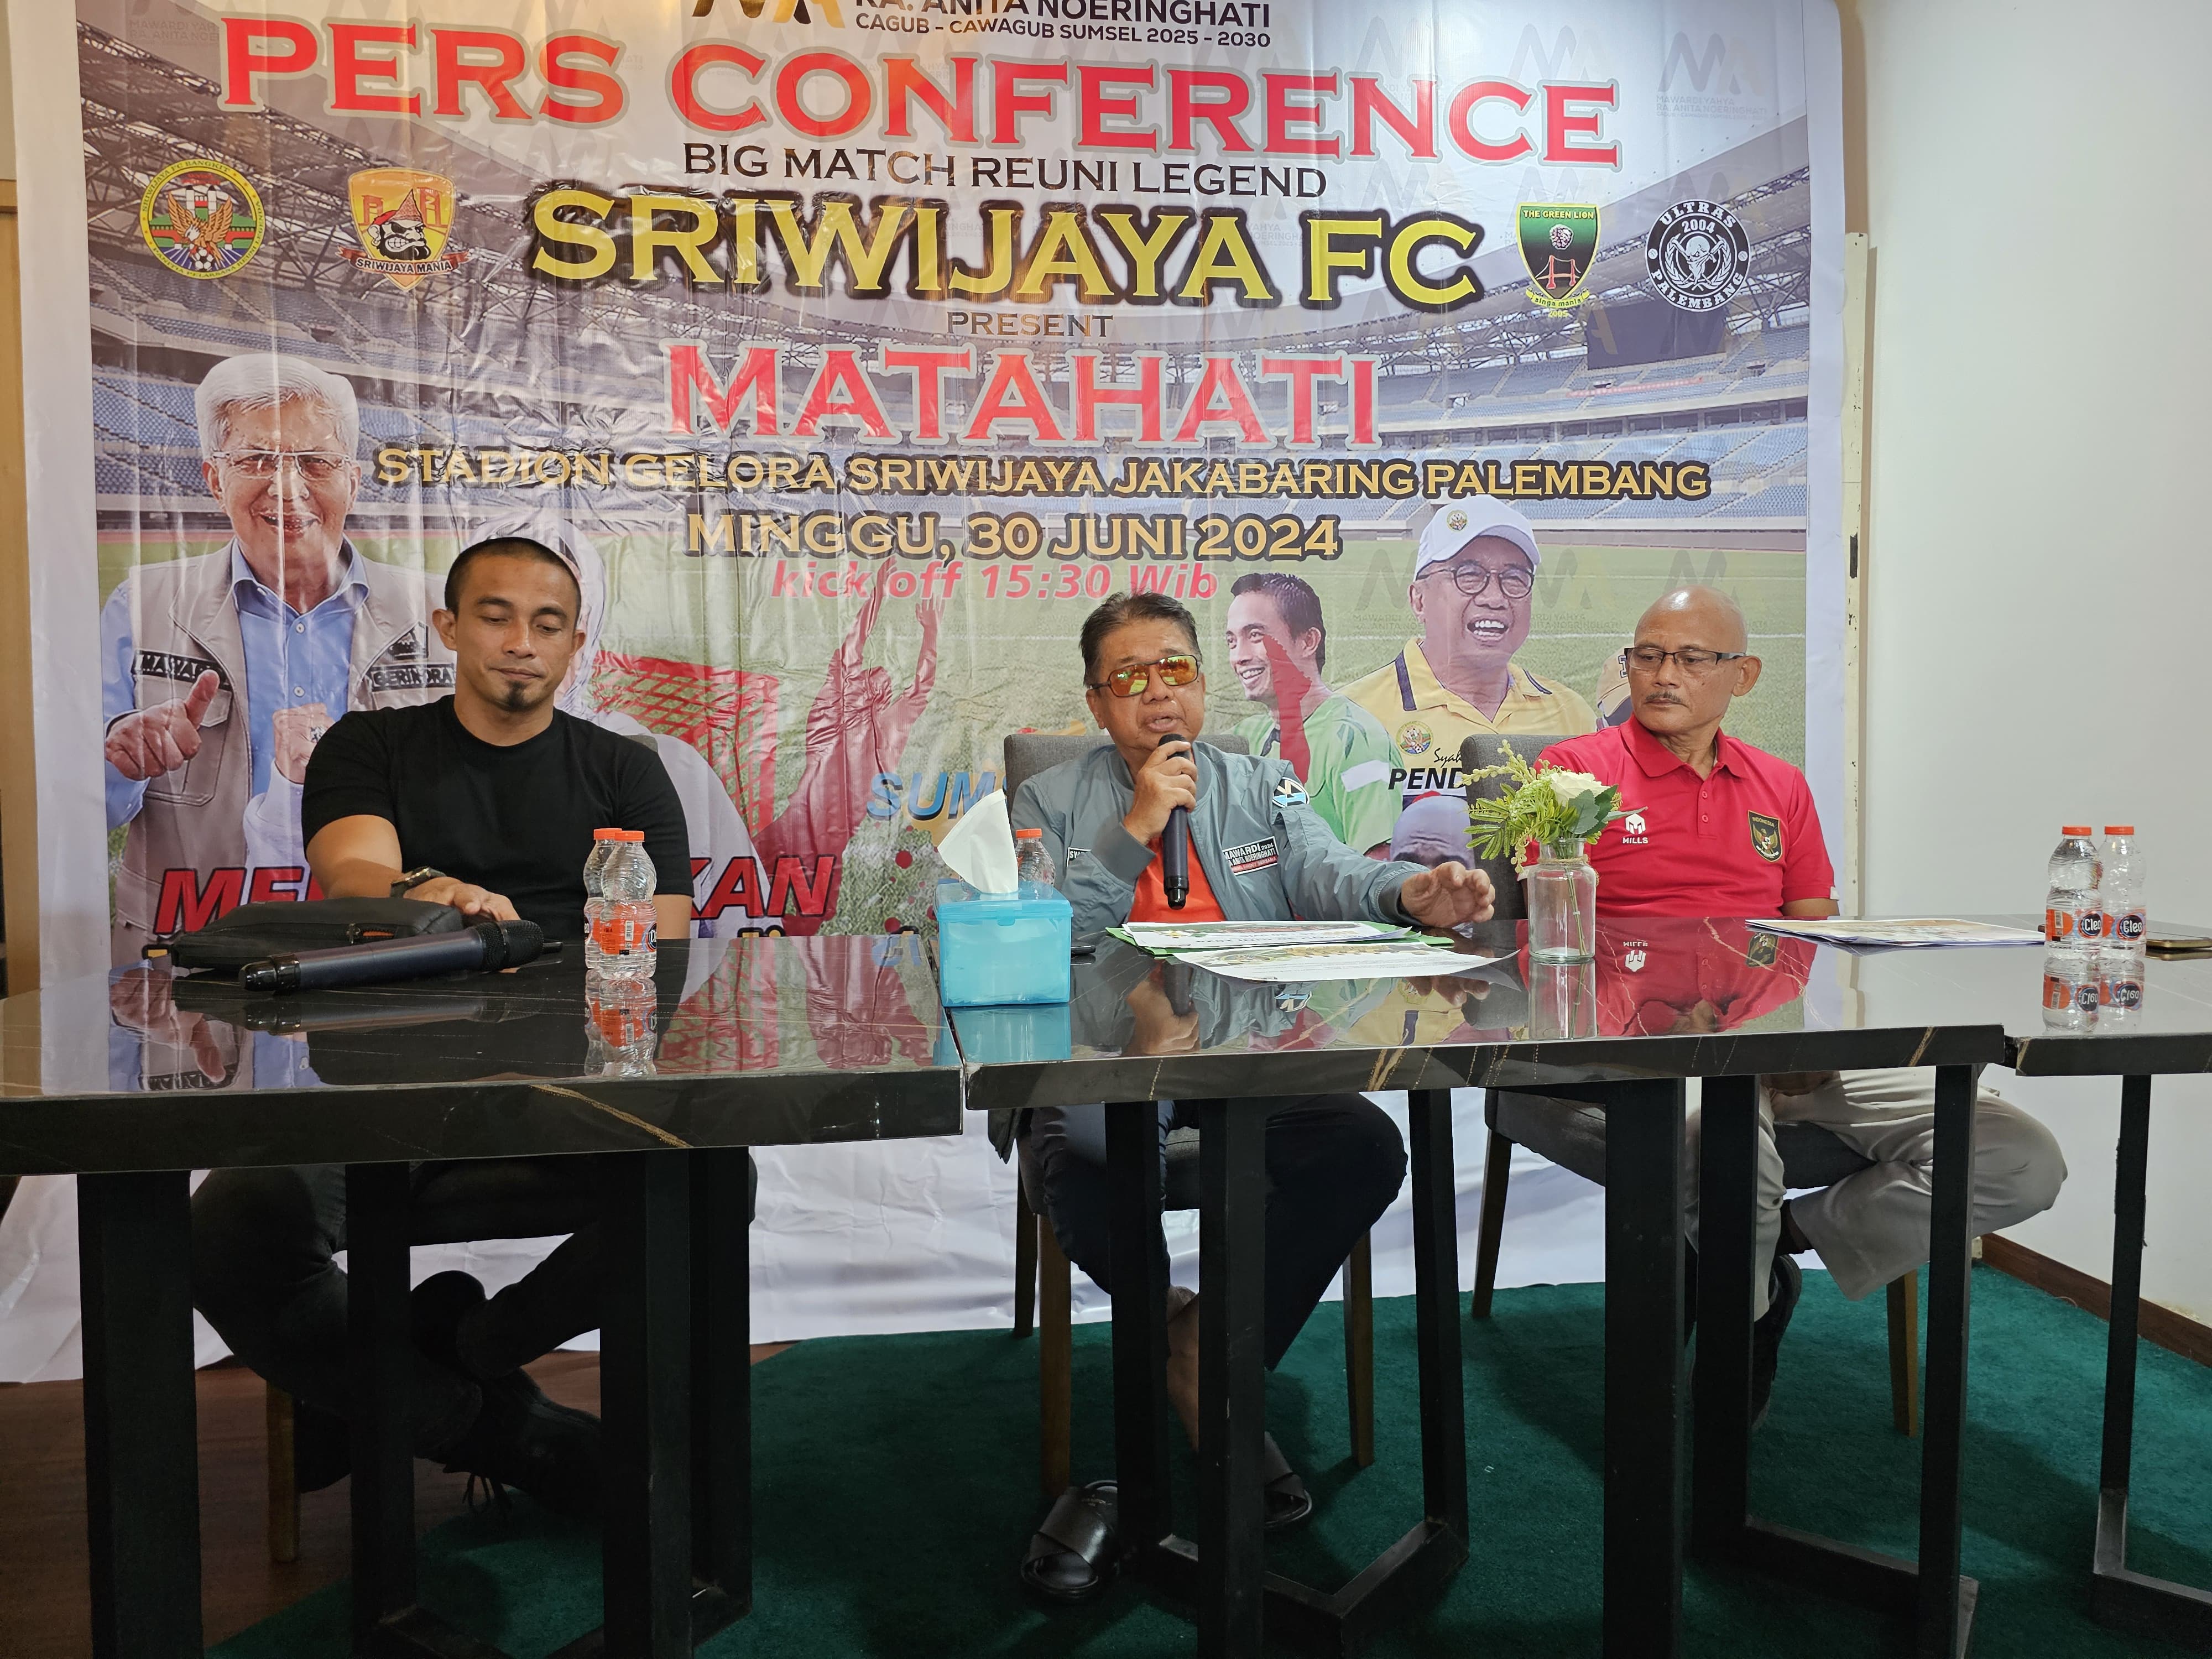 Pemain Siriwijaya FC Saat Double Winner Akan Berlaga di Big Match Reuni Legend, Ada Kayamba dan Coach RD!